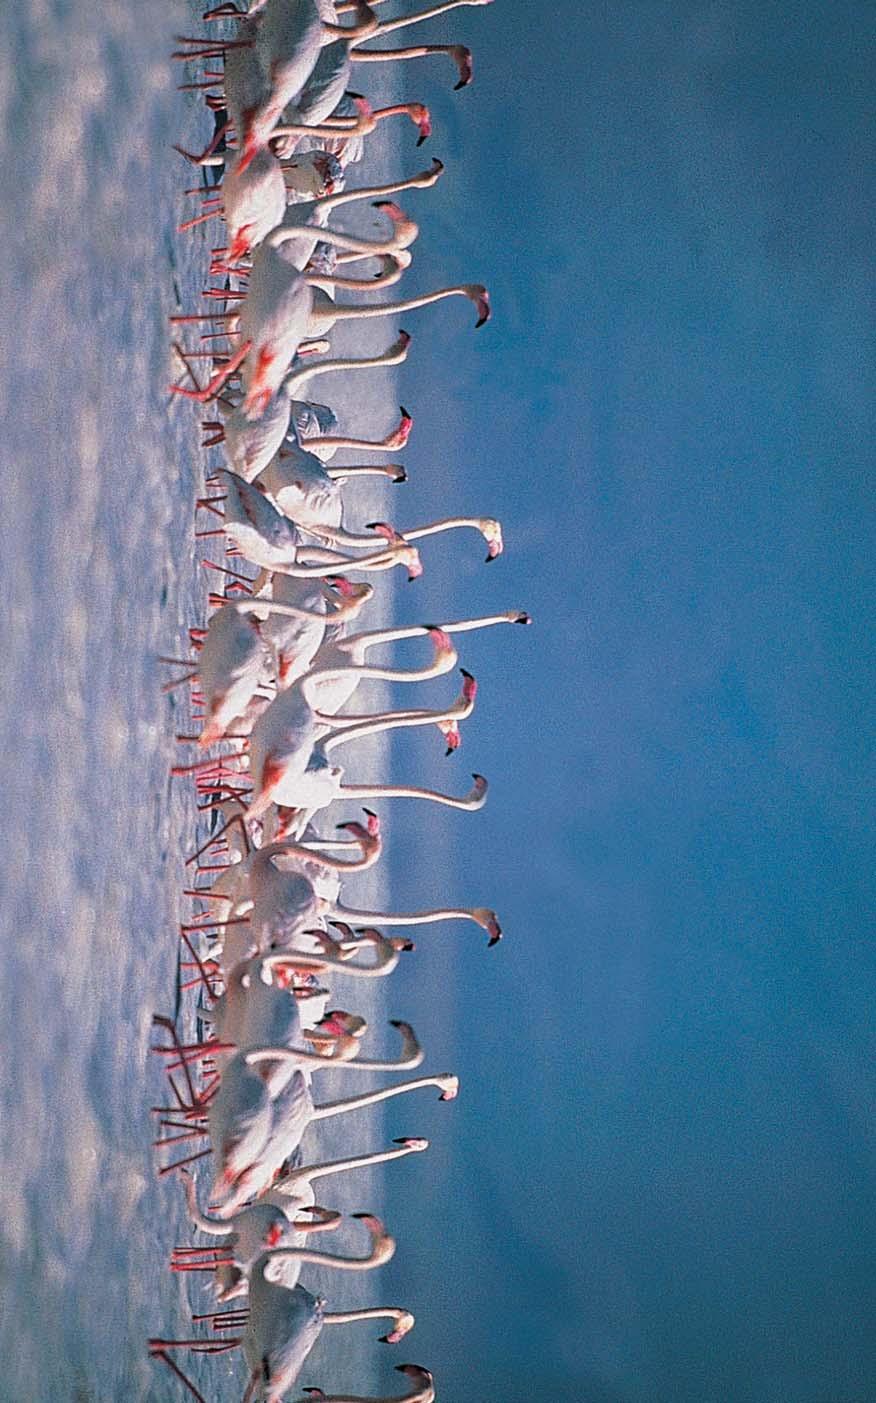 Tersakan Gölü ORT022 Çok Acil Gerileme (-2) Flamingo (Phoenicopterus roseus) Cüneyt Oðuztüzün Yüzölçümü : 11961 ha Yükseklik : 920 m - 930 m Boylam : 33,05ºD Ýl(ler) : Konya Enlem : 38,58ºK Ýlçe(ler)